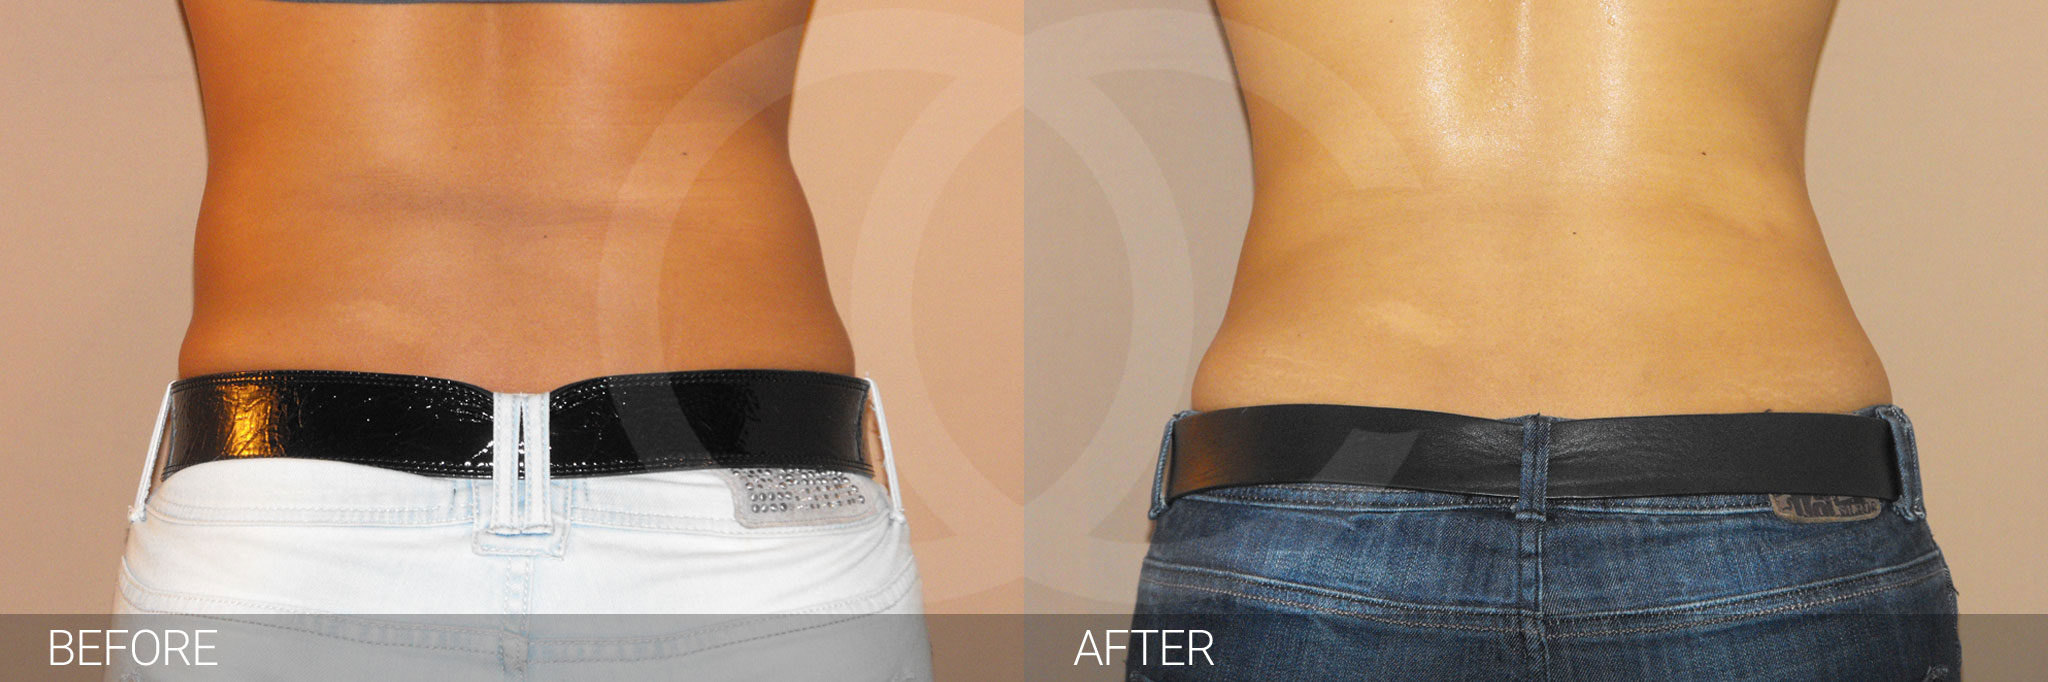 Antes y después Liposucción abdominal fotos reales de pacientes 2.3 | Ocean Clinic Marbella Madrid